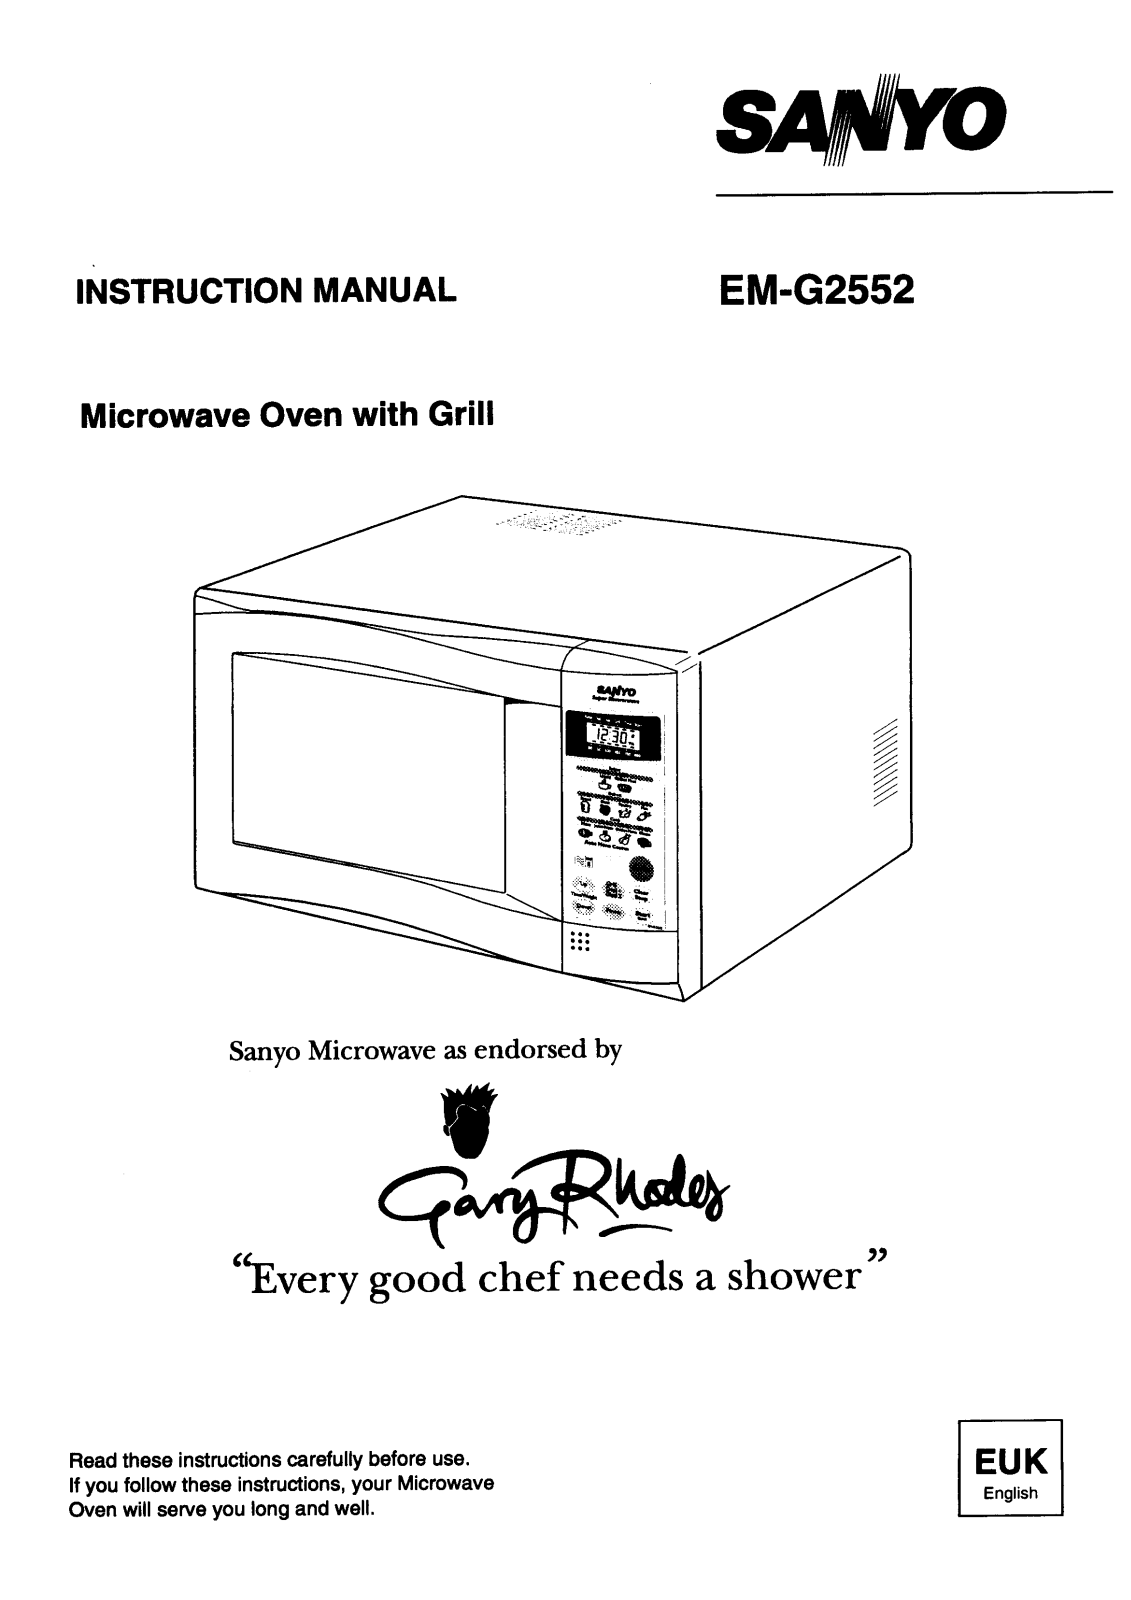 Sanyo EM-G2552 Instruction Manual